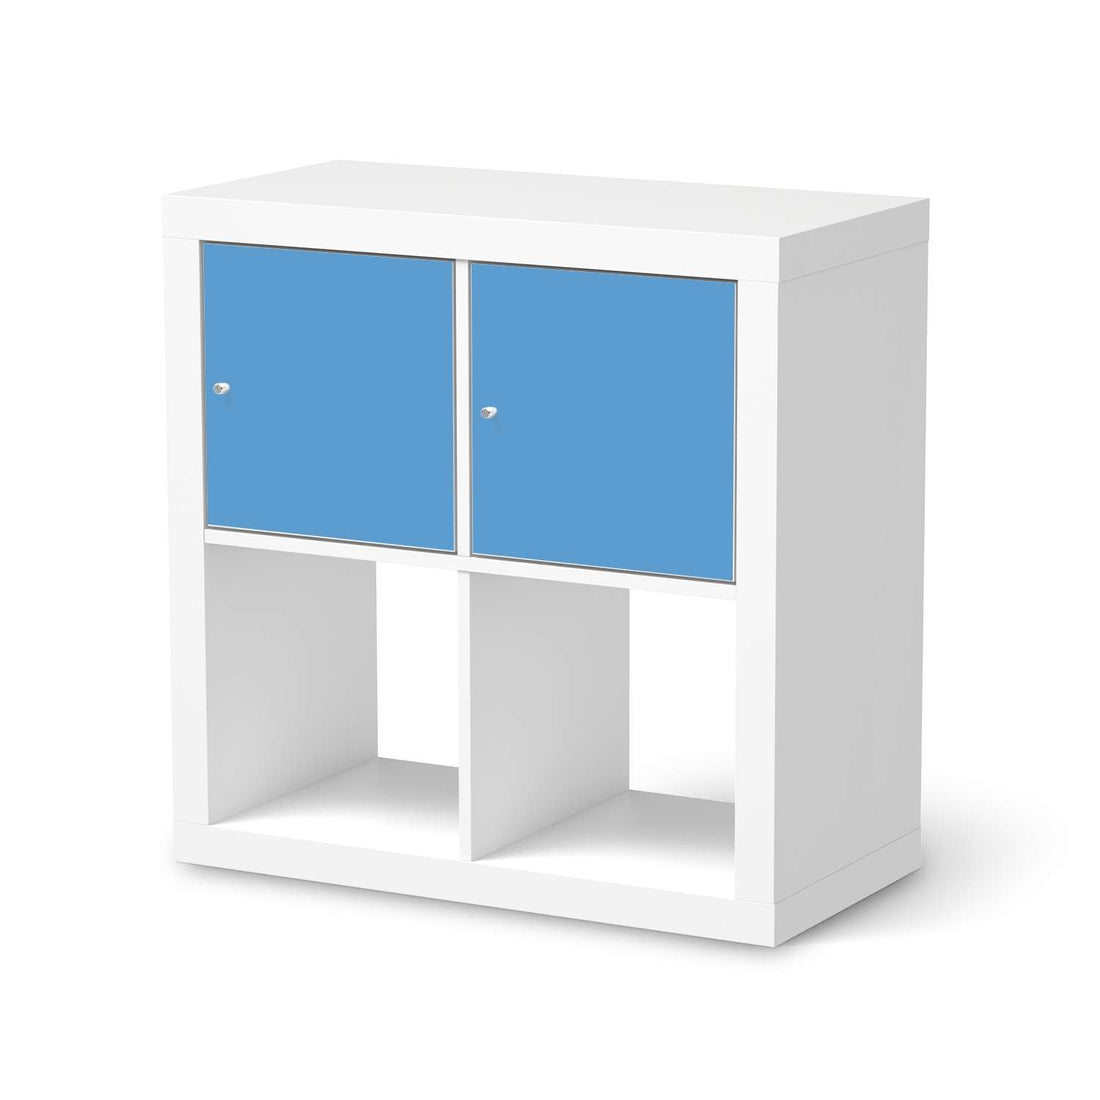 Möbel Klebefolie Blau Light - IKEA Expedit Regal 2 Türen Quer  - weiss